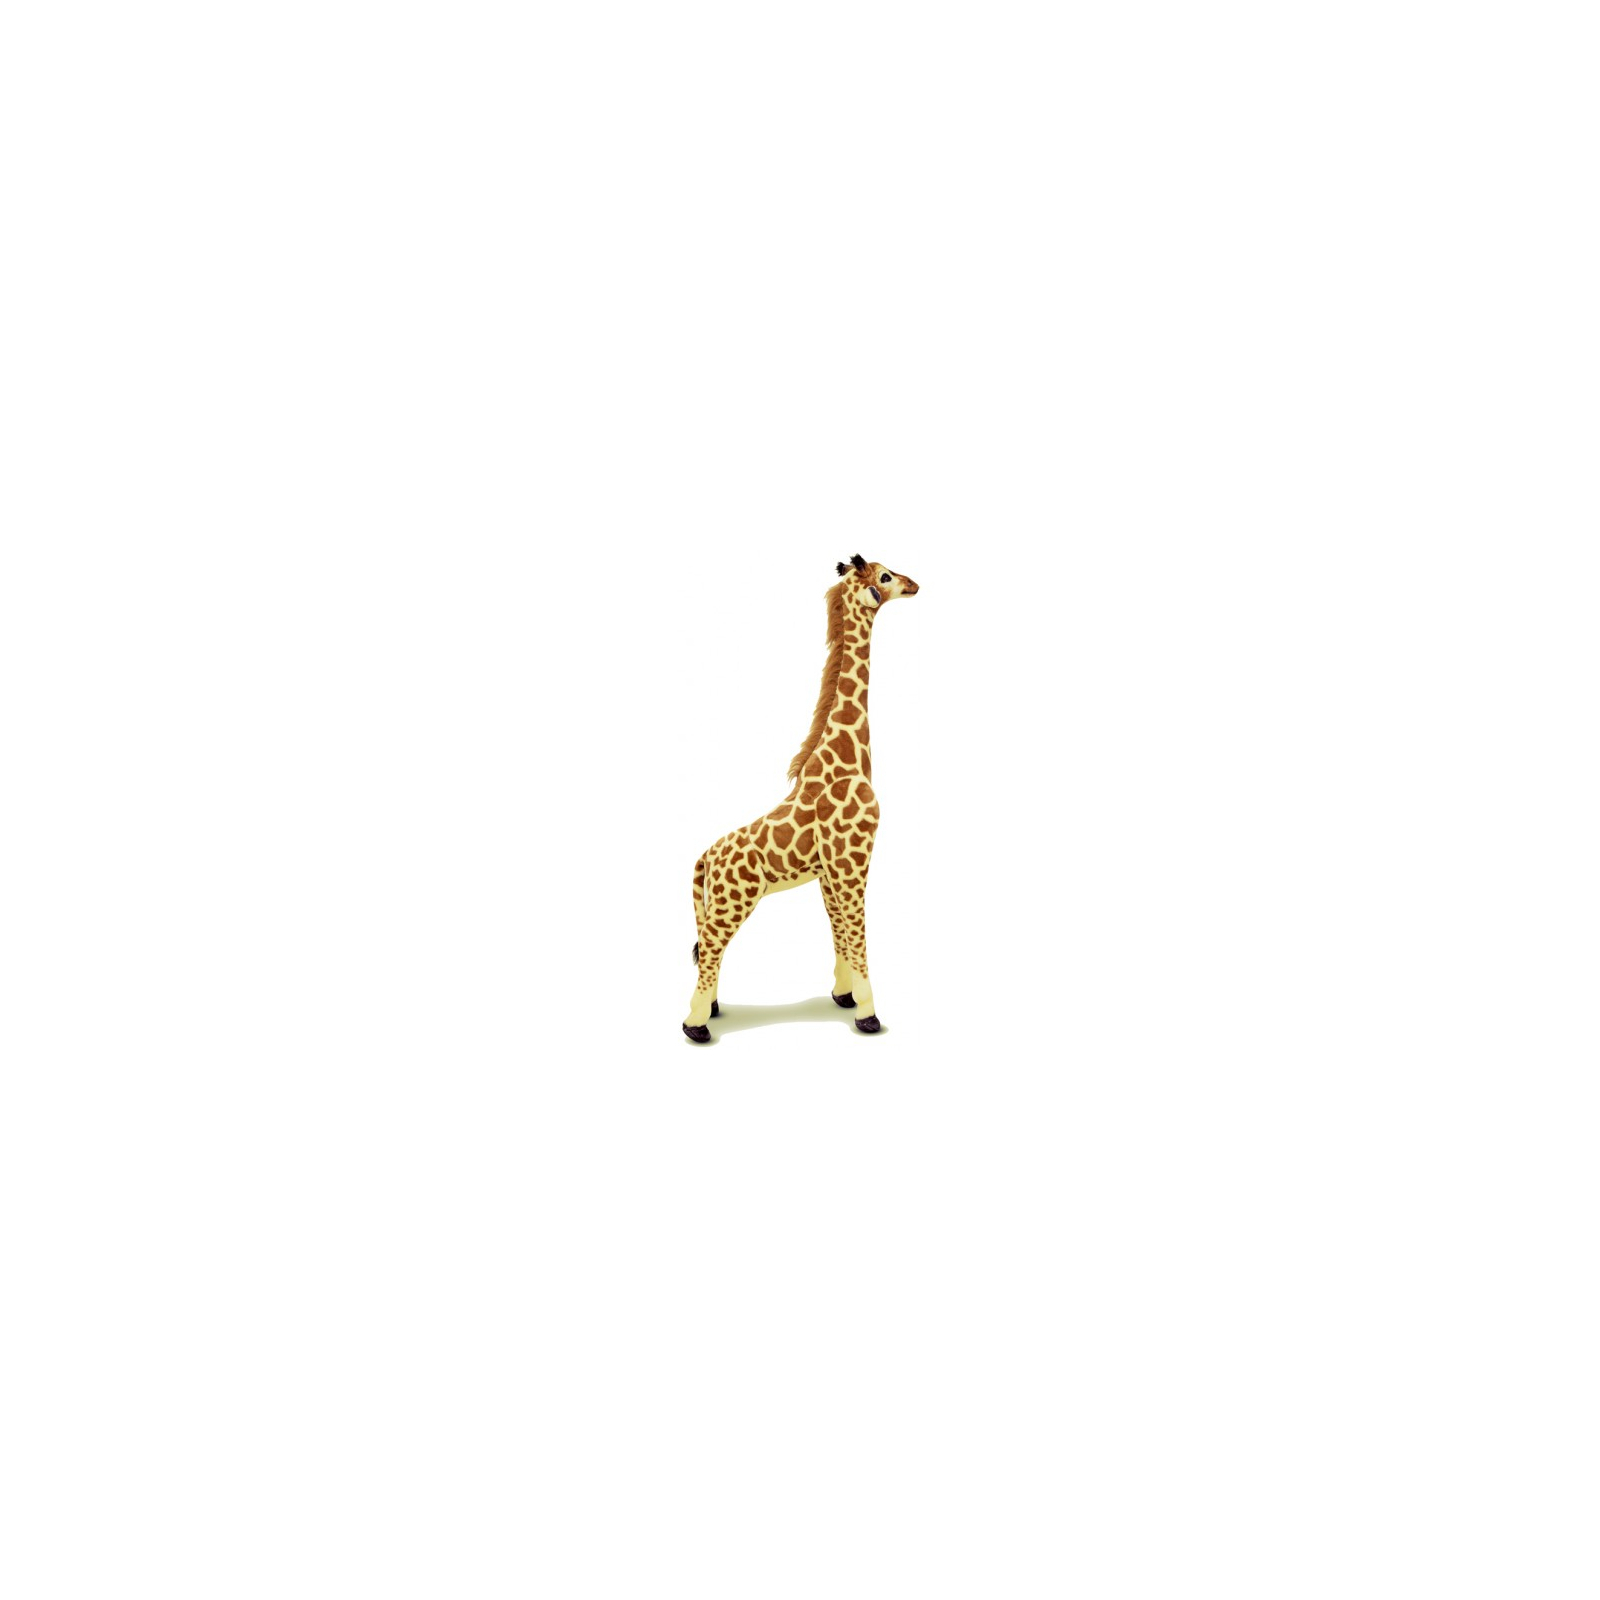 Мягкая игрушка Melissa&Doug Огромный плюшевый жираф, 1,40 м (MD2106)